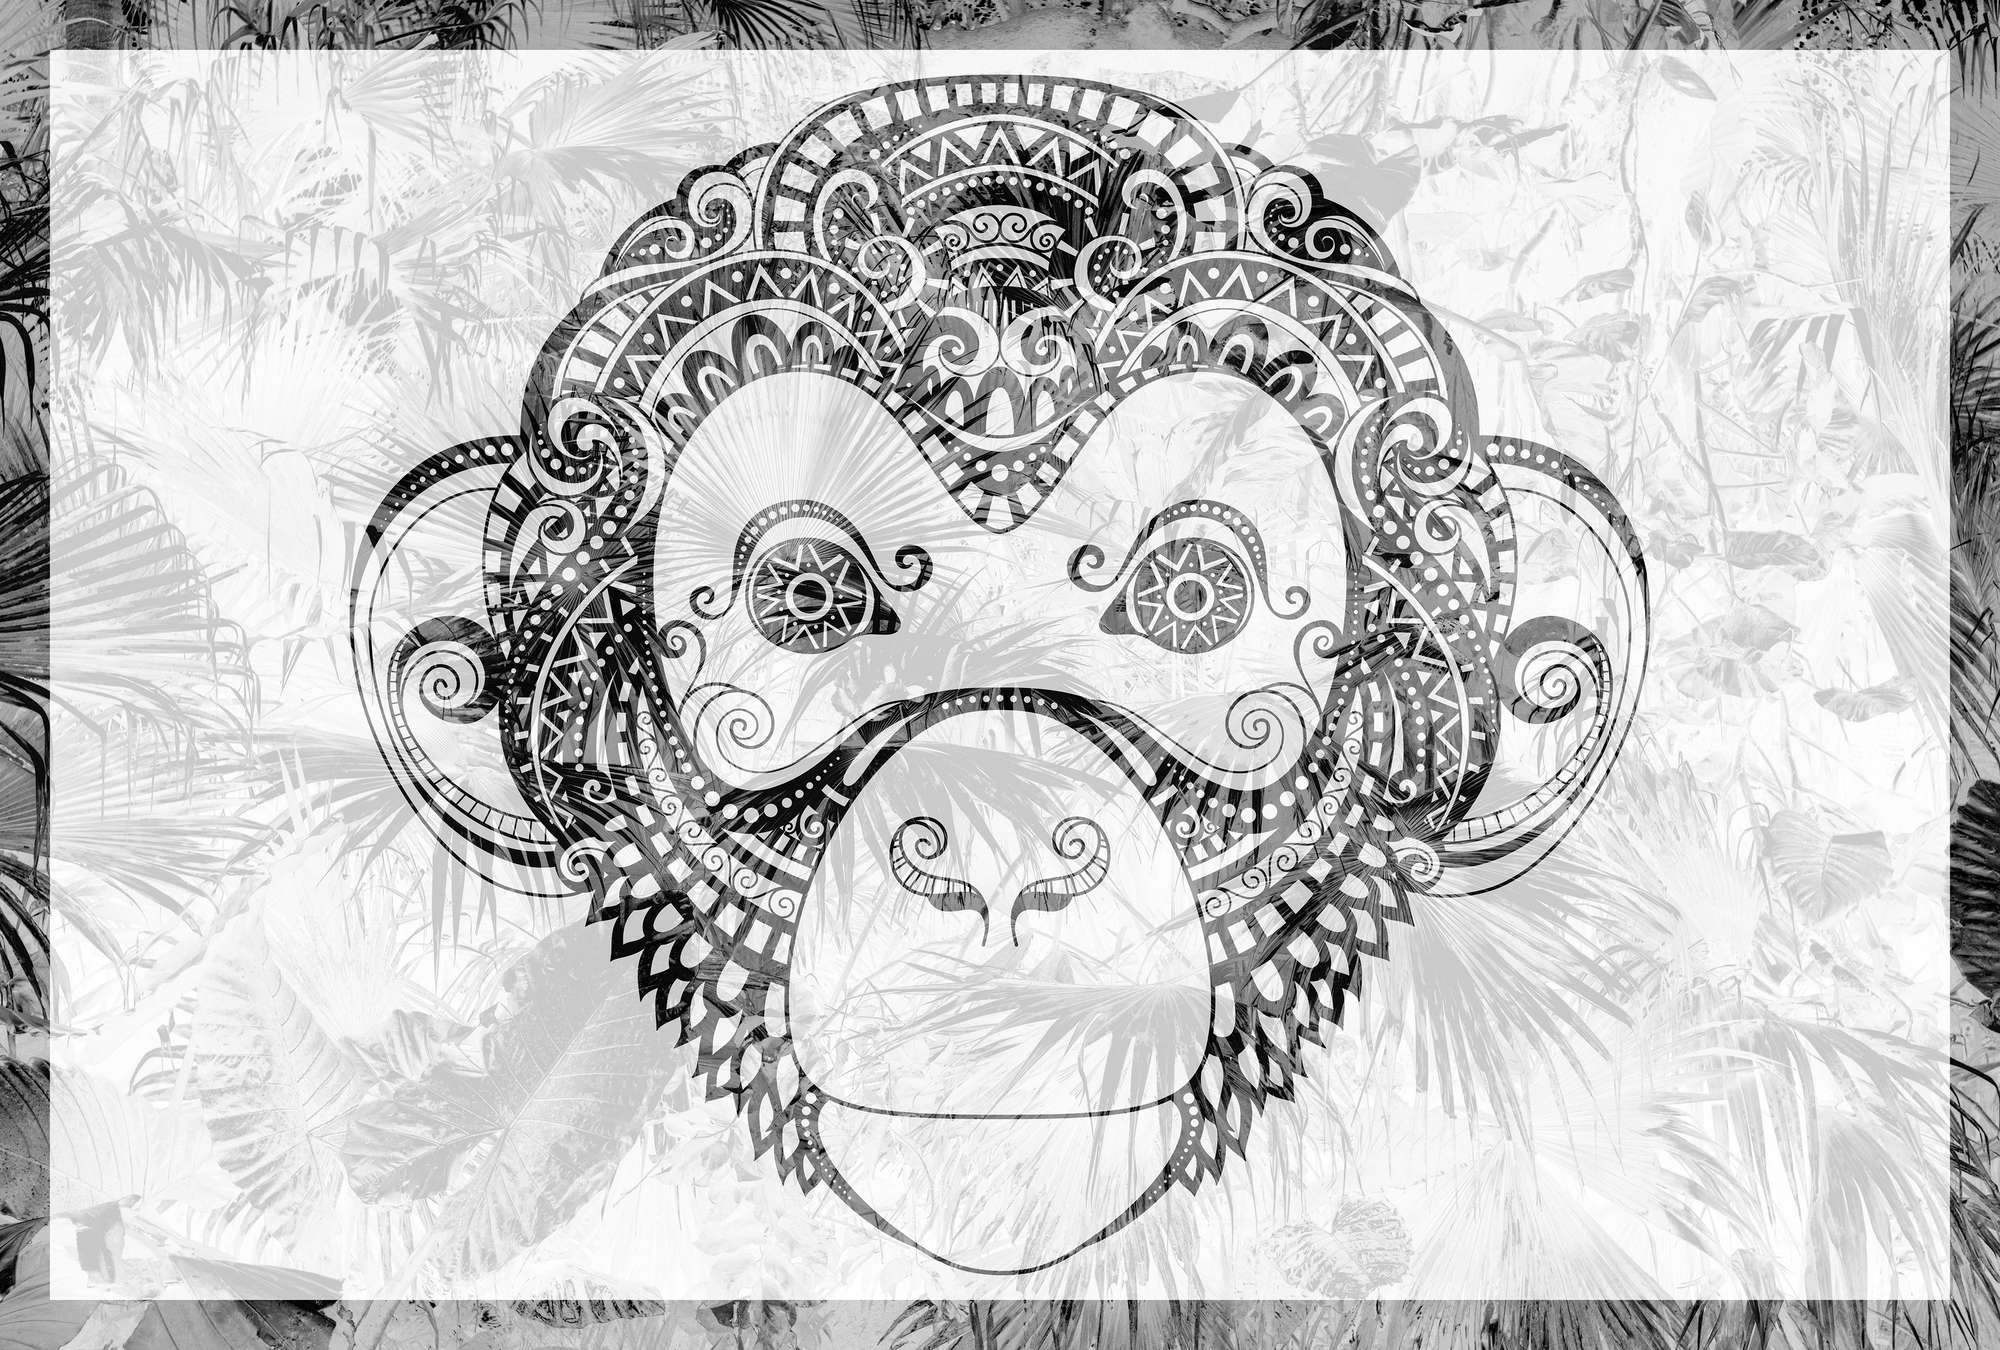             Fotomurali Scimmia in stile fumetto, motivo giungla in bianco e nero - Nero, bianco, grigio
        